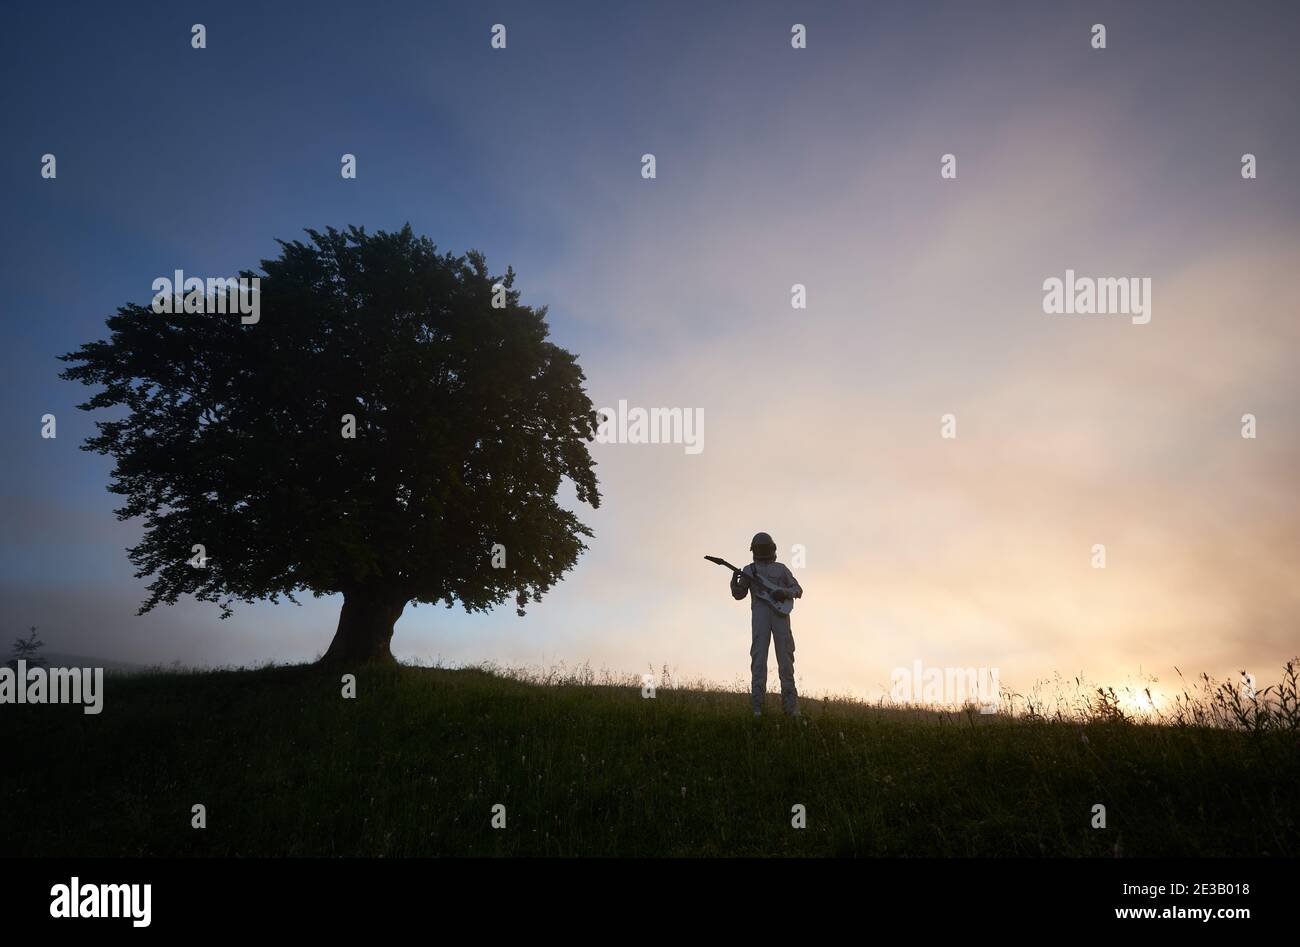 Horizontale Momentaufnahme von zwei Silhouetten auf violettem Himmel Hintergrund, von einem Raumfahrer im Raumanzug, der Gitarre spielt und einem großen alten Baum auf der rechten Seite. Konzept von Musik, Kosmonauten und Natur. Stockfoto